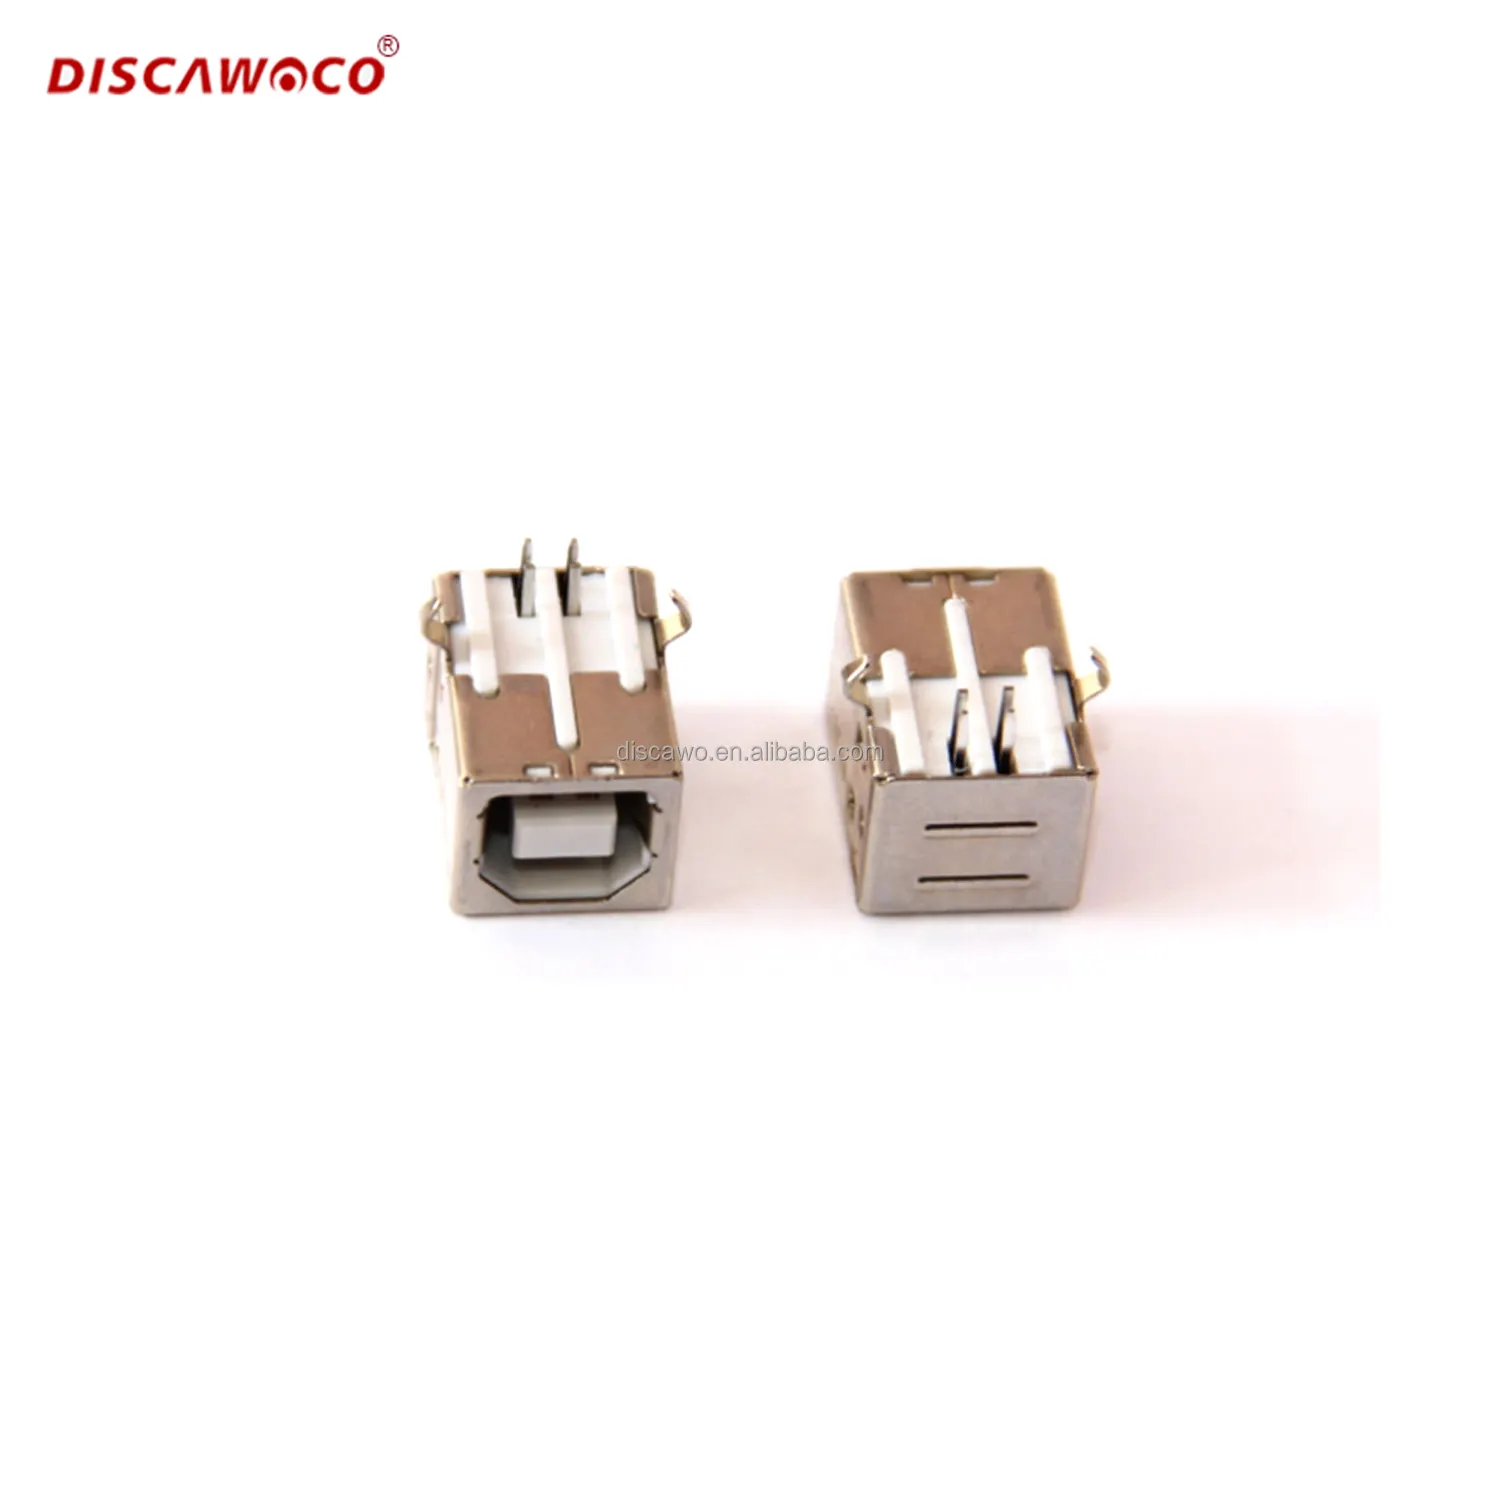 Disawo Port soket USB persegi untuk Printer Data antarmuka Usb tipe B perempuan 90 derajat PCB konektor orang tua tipe D